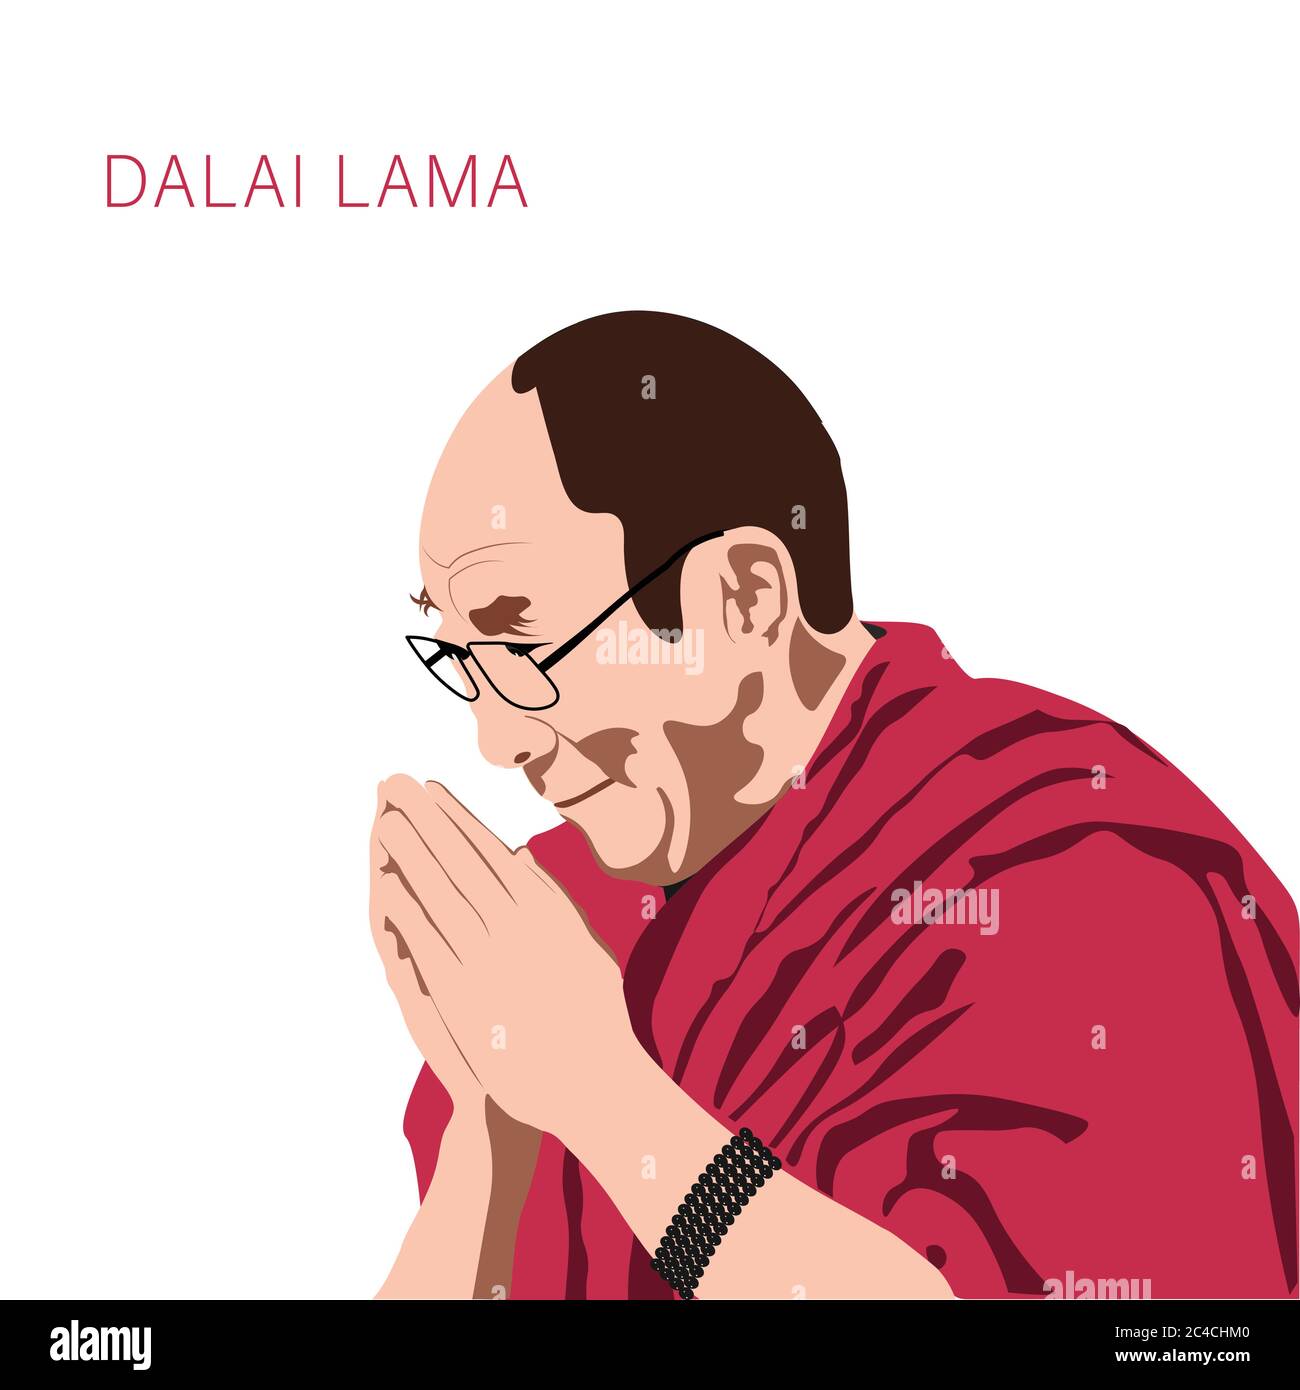 Dalai Lama Tenzin Gyatso ein spirituelles Führerporträt. Ein Symbol der Vereinigung, seine Heiligkeit der 14. Dalai Lama. Seitdem lebt er im Exil in Indien Stock Vektor